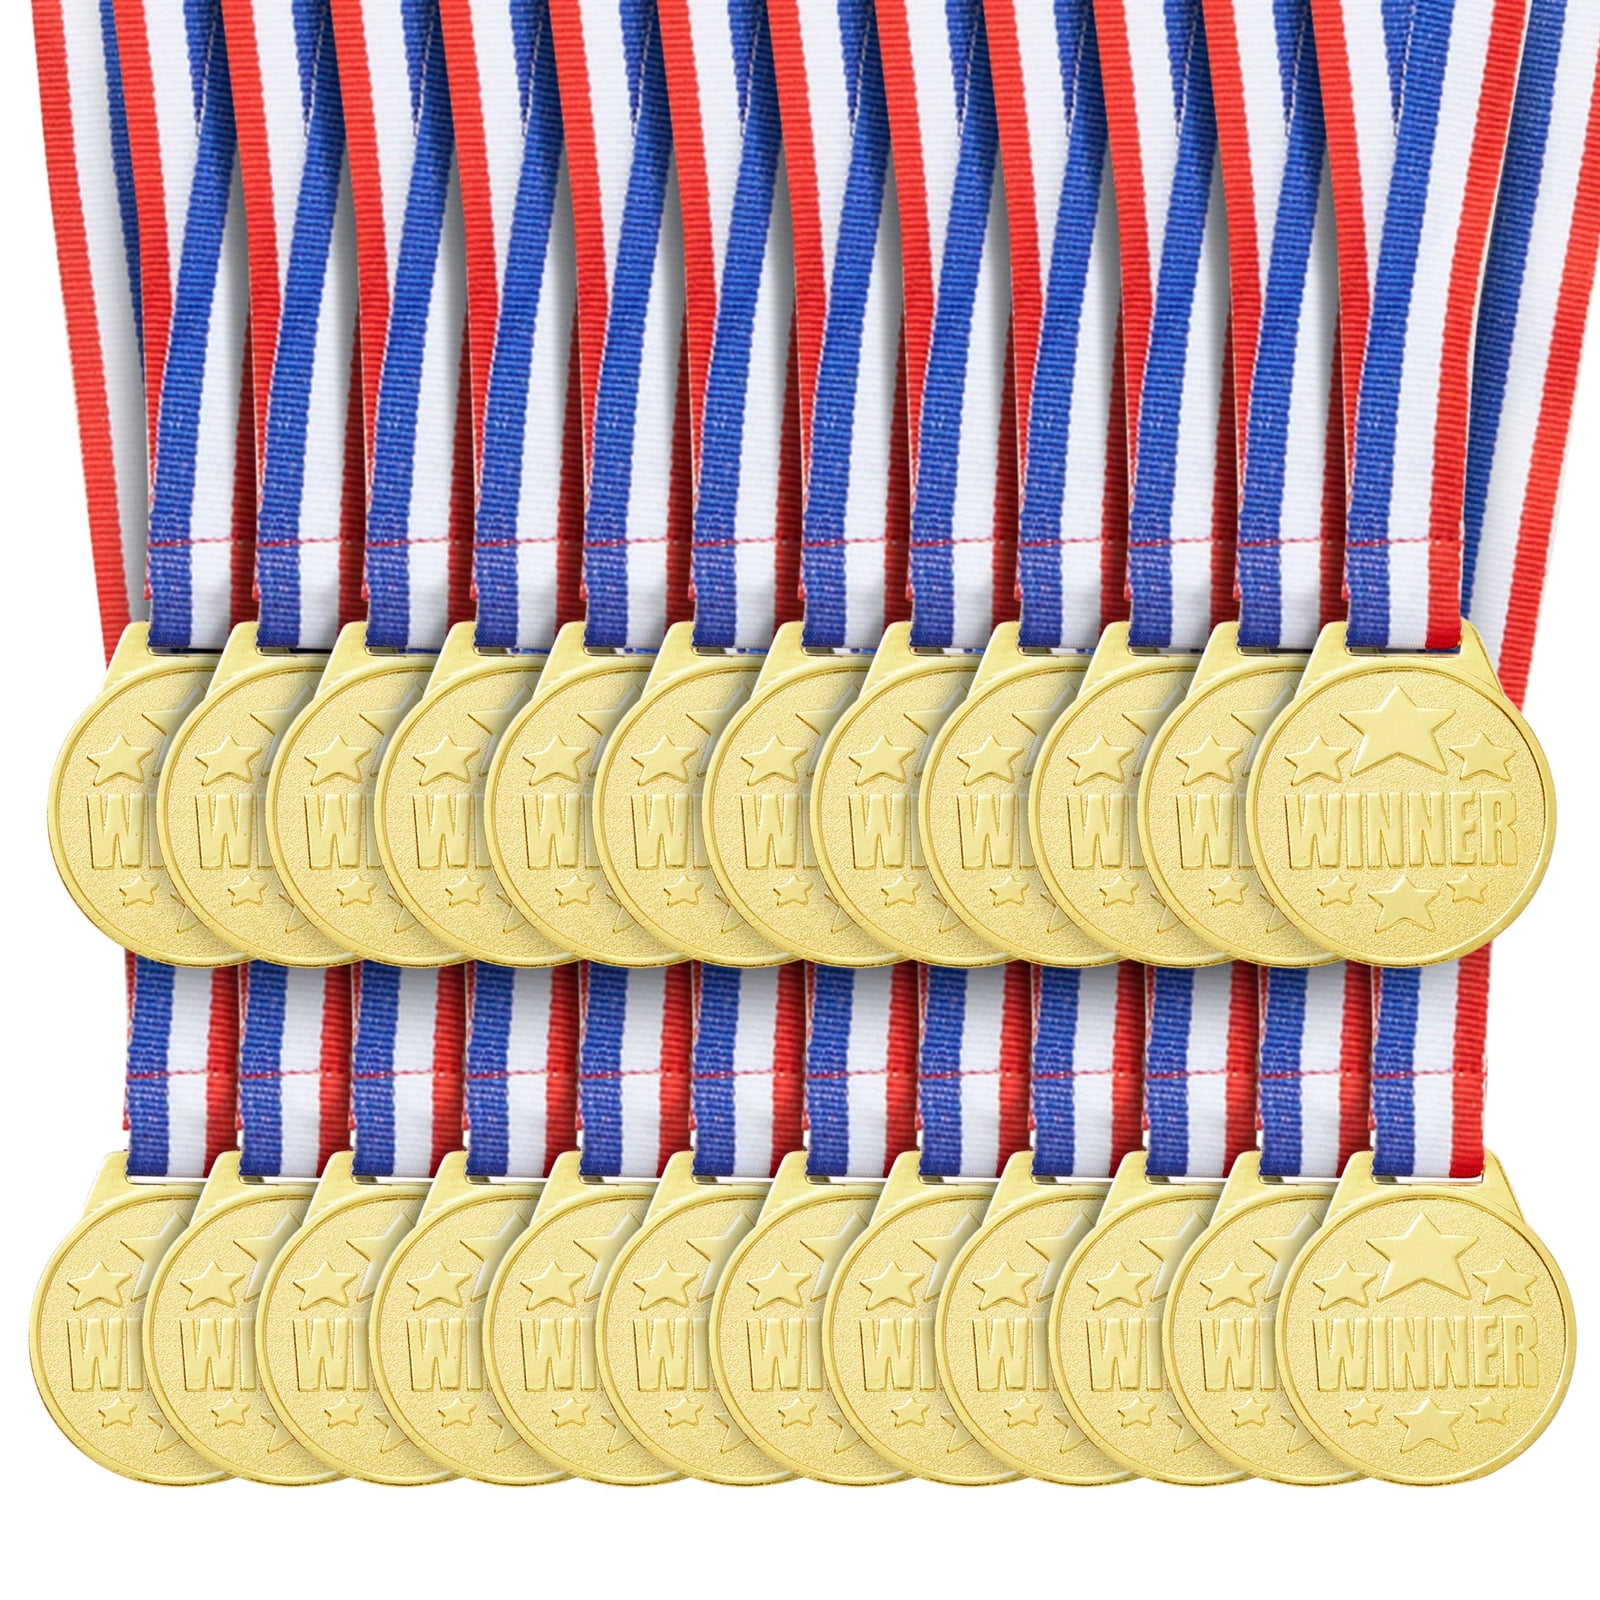 Premio medalla de oro, medallas bellamente diseñadas., texto